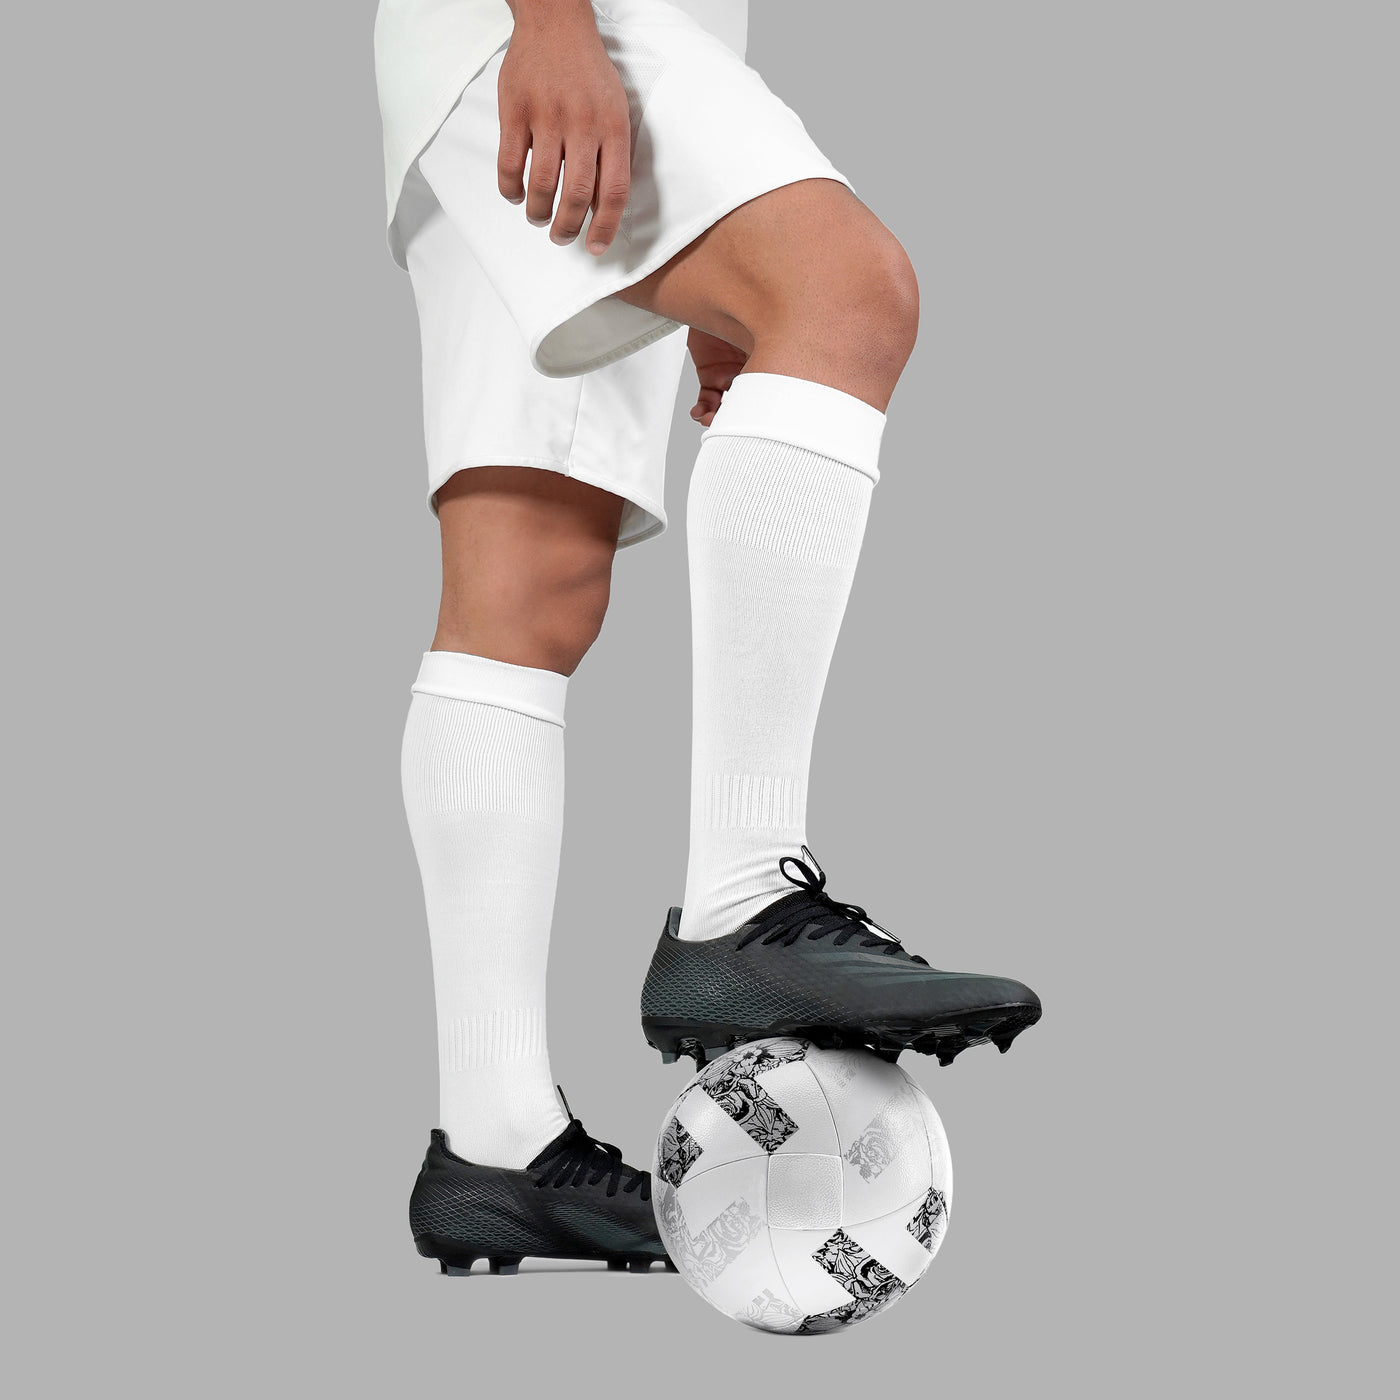 Basic White Soccer Knee-High Socks